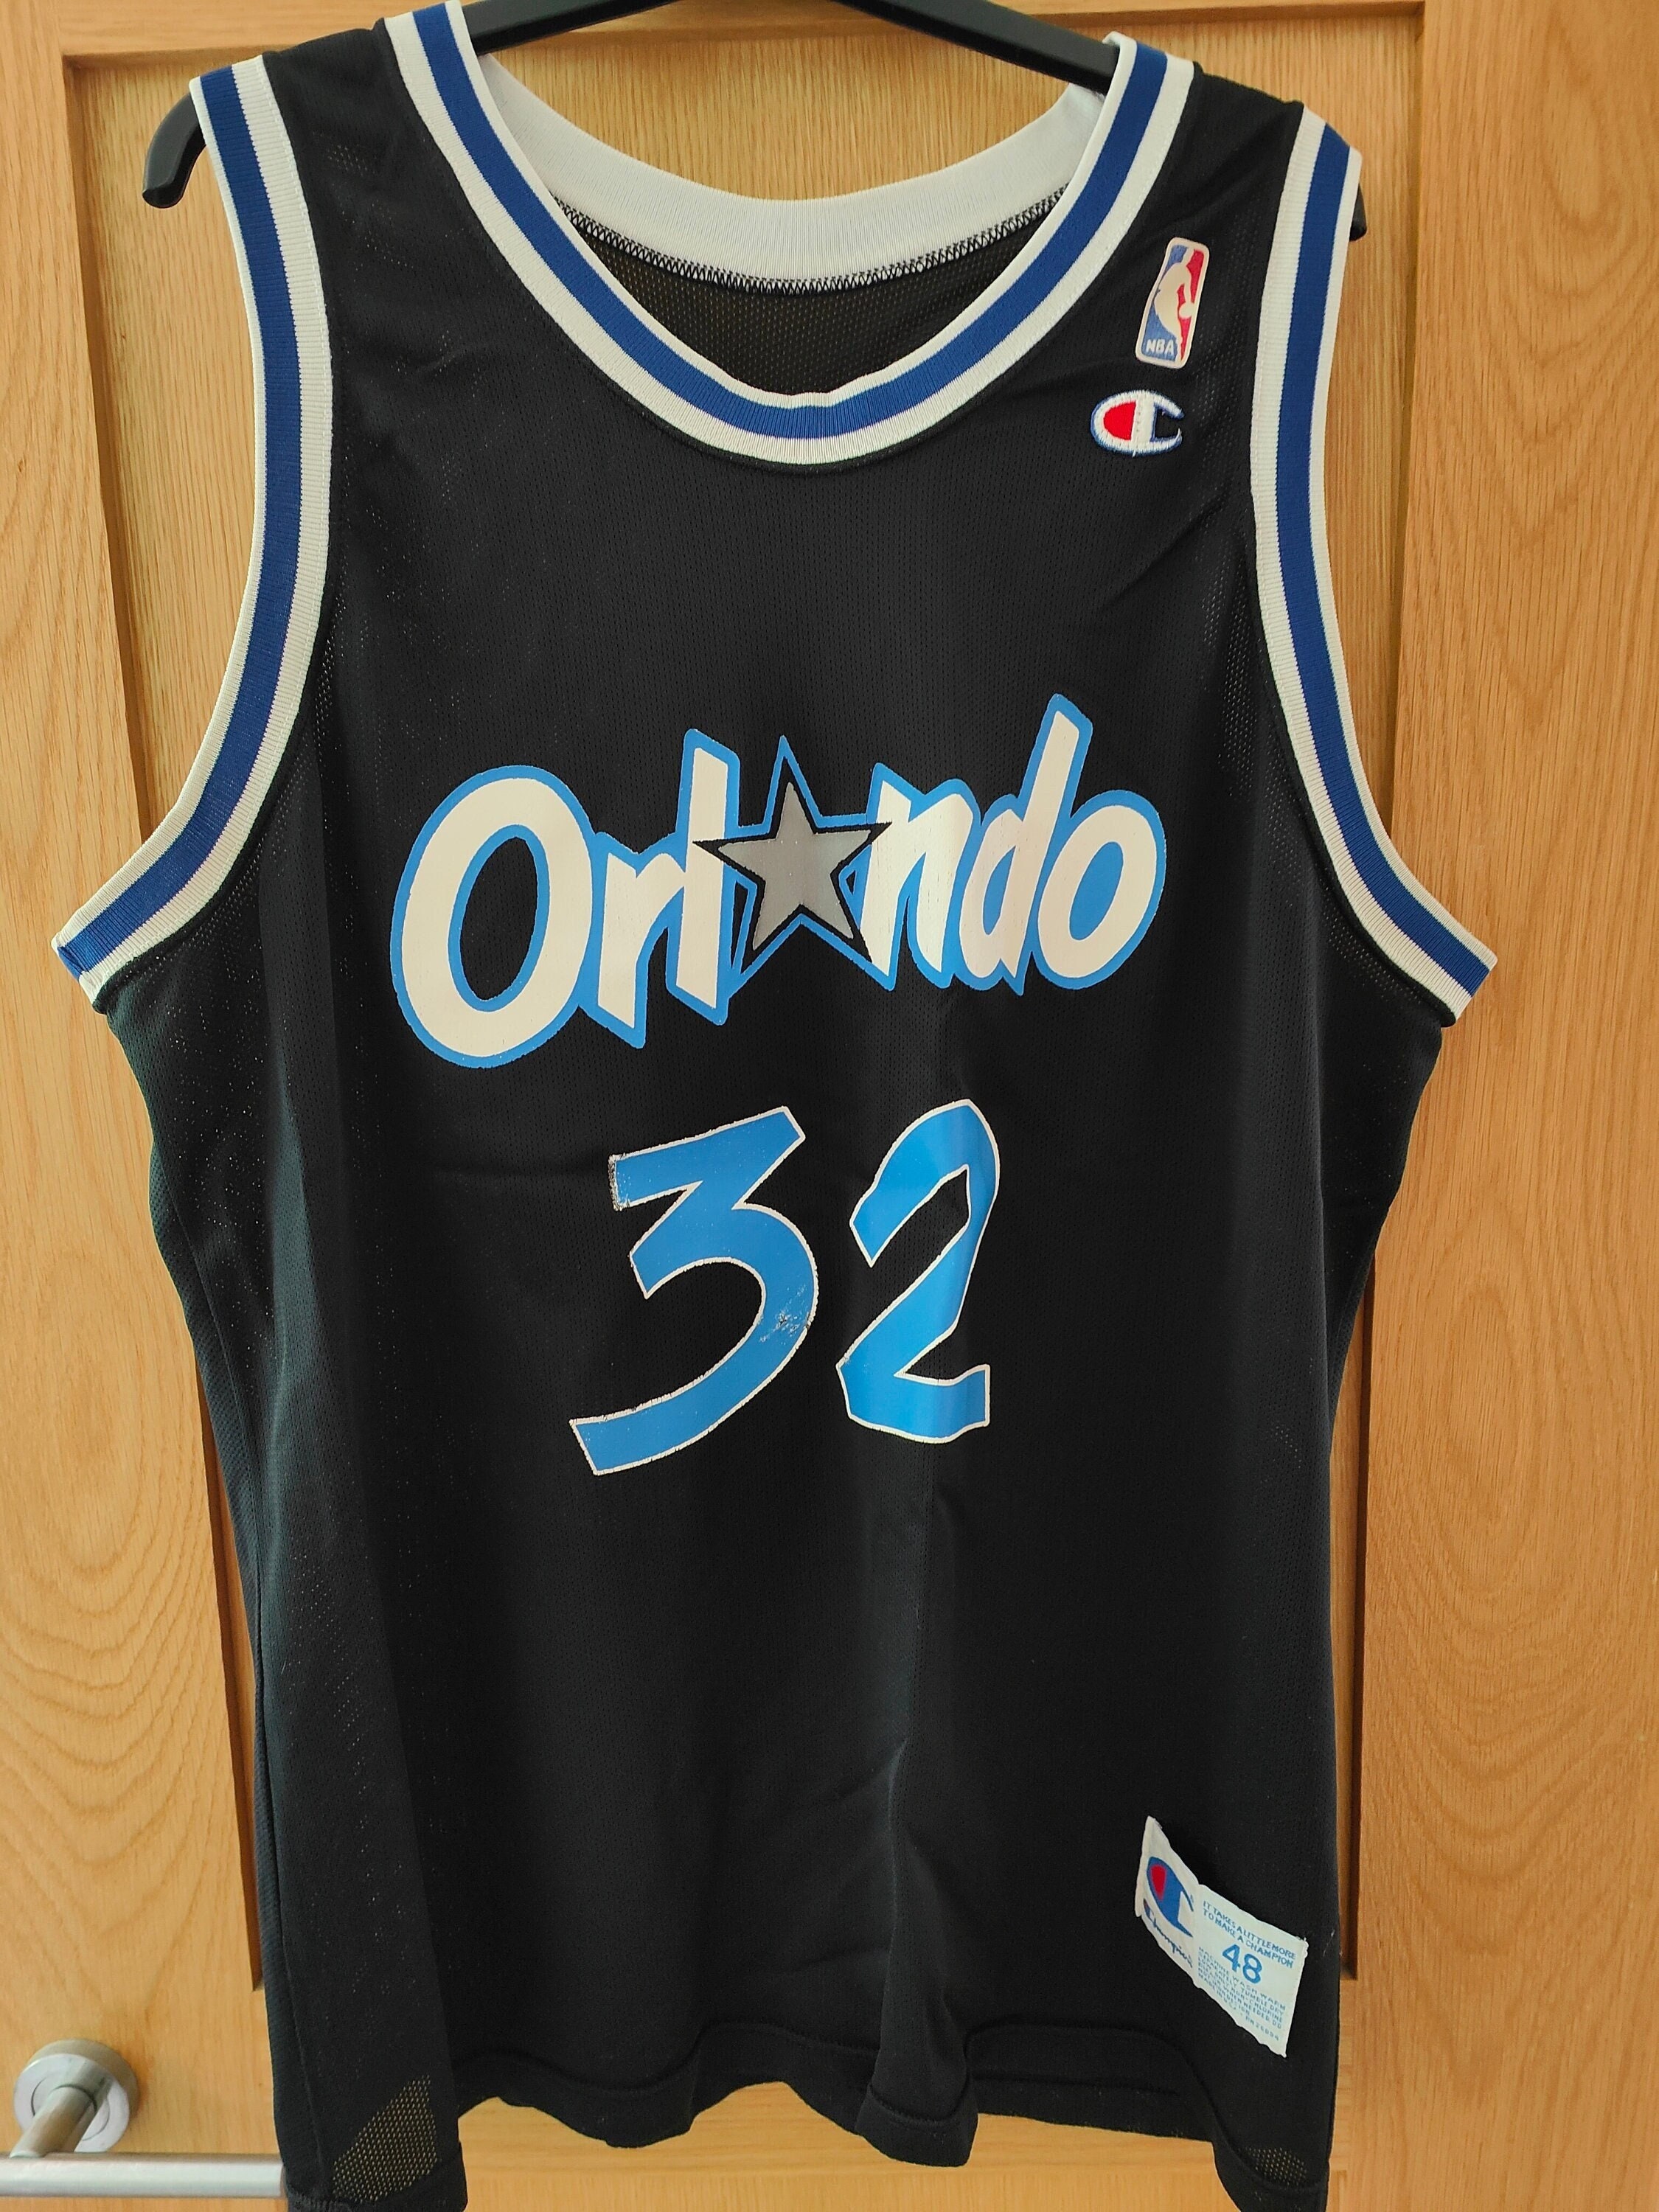 NBA Orlando Magic Basketball Jersey Singlet Spalding No. 32 O'Neal Size Sml